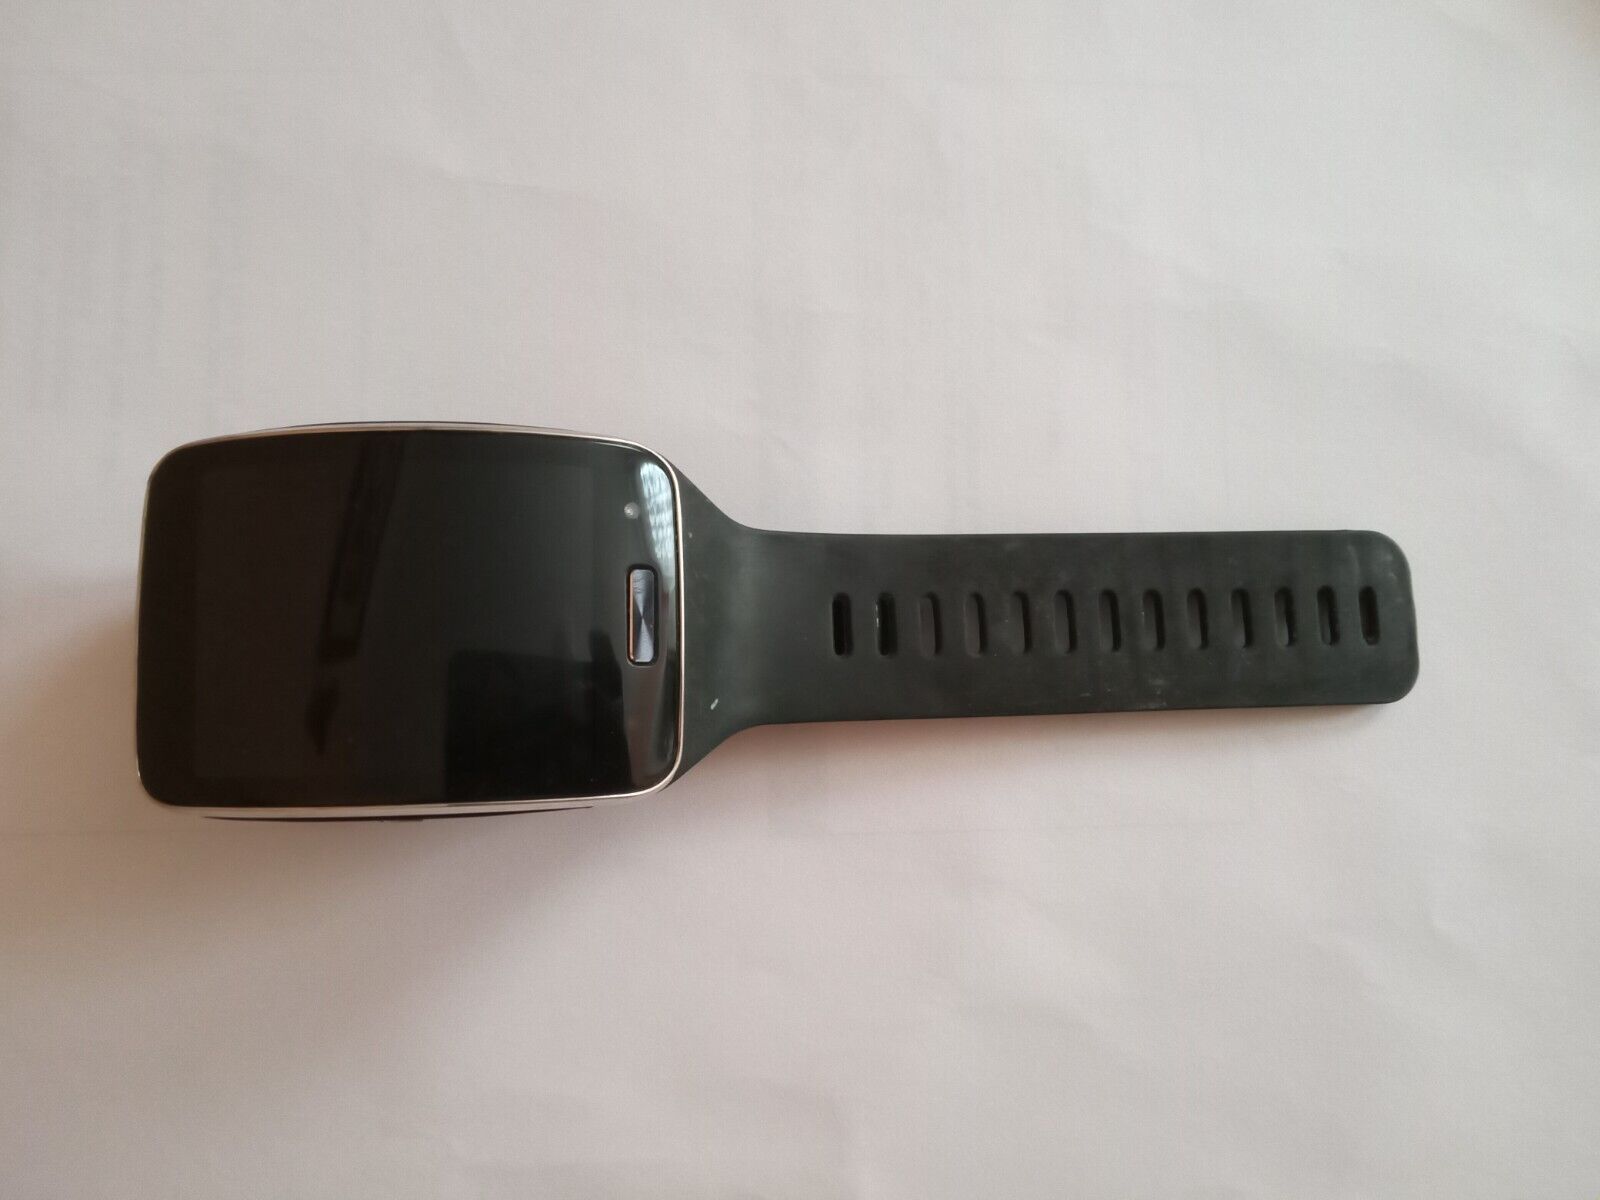 Samsung Galaxy Gear S 51mm Black Silicone Smart Watch - (SM-R750WZKAXAC) Samsung SM-R750WZKAXAC - фотография #2